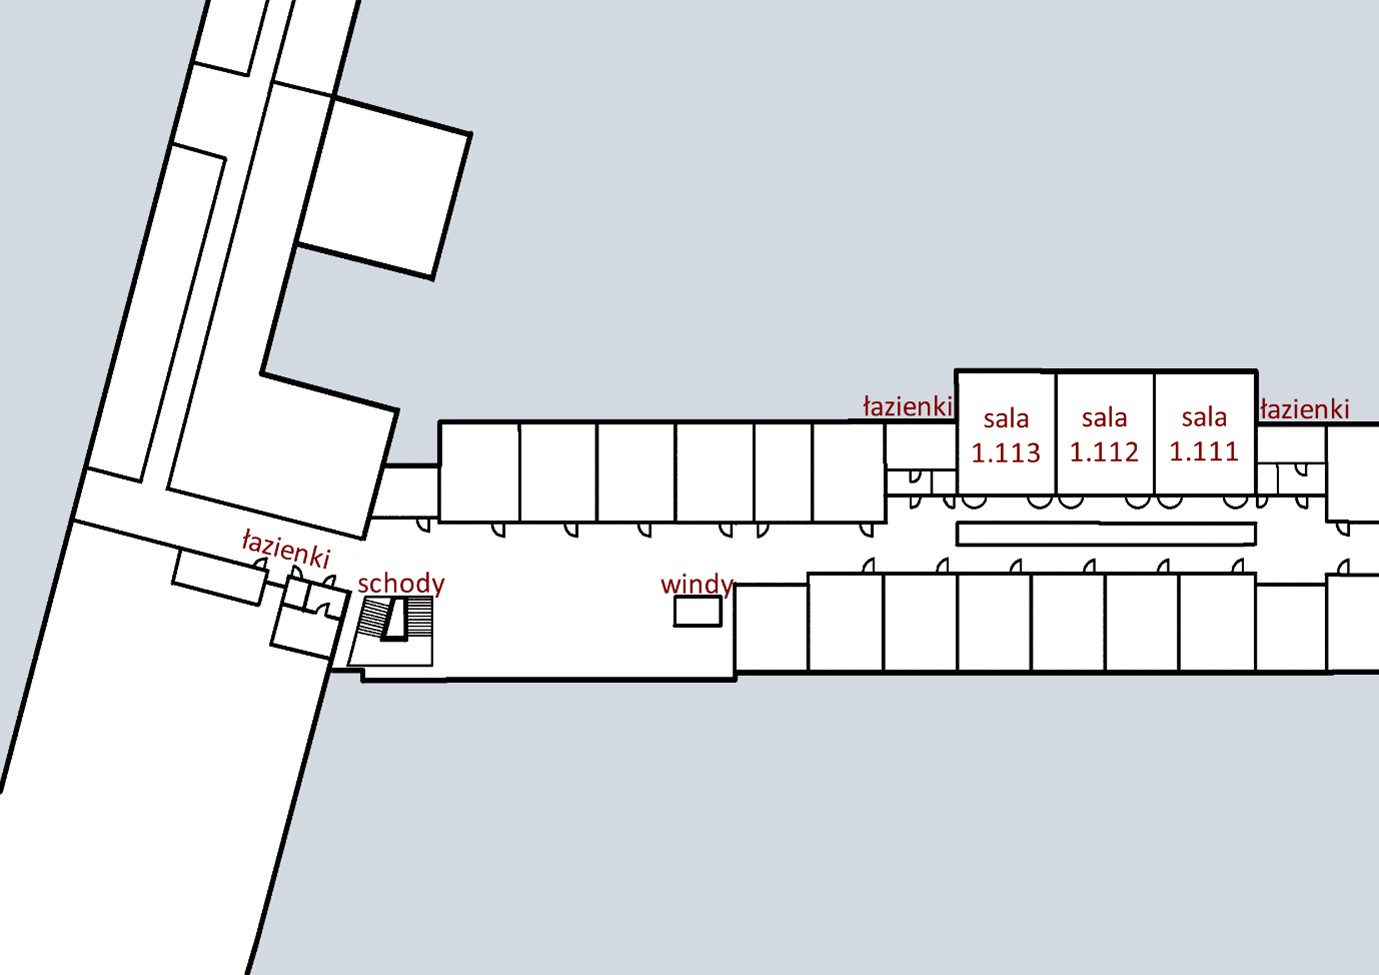 Mapa 1. piętra z oznaczonymi łazienkami, schodami, windami i salami 1.113, 1.112, 1.111.